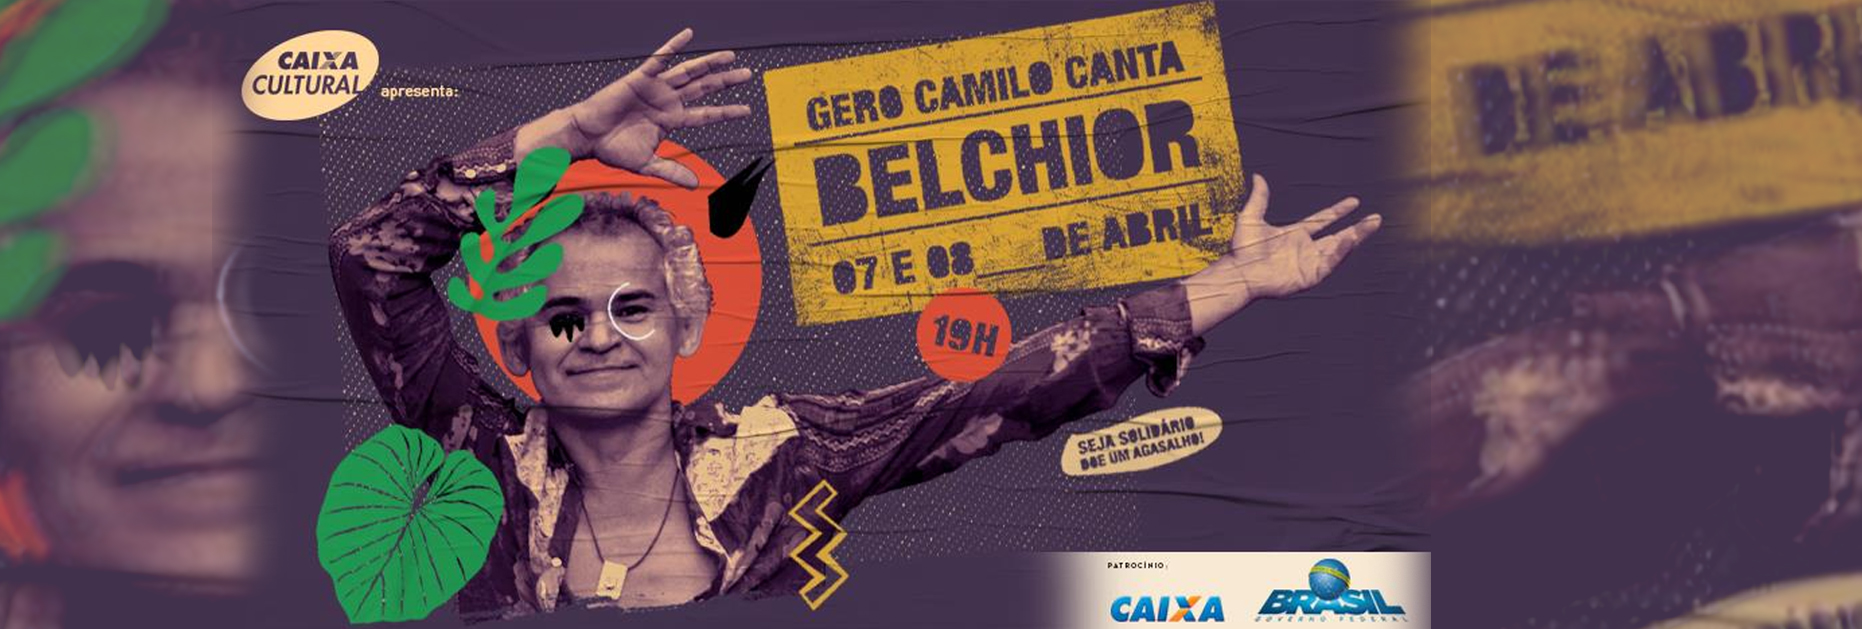 Gero Camilo canta Belchior